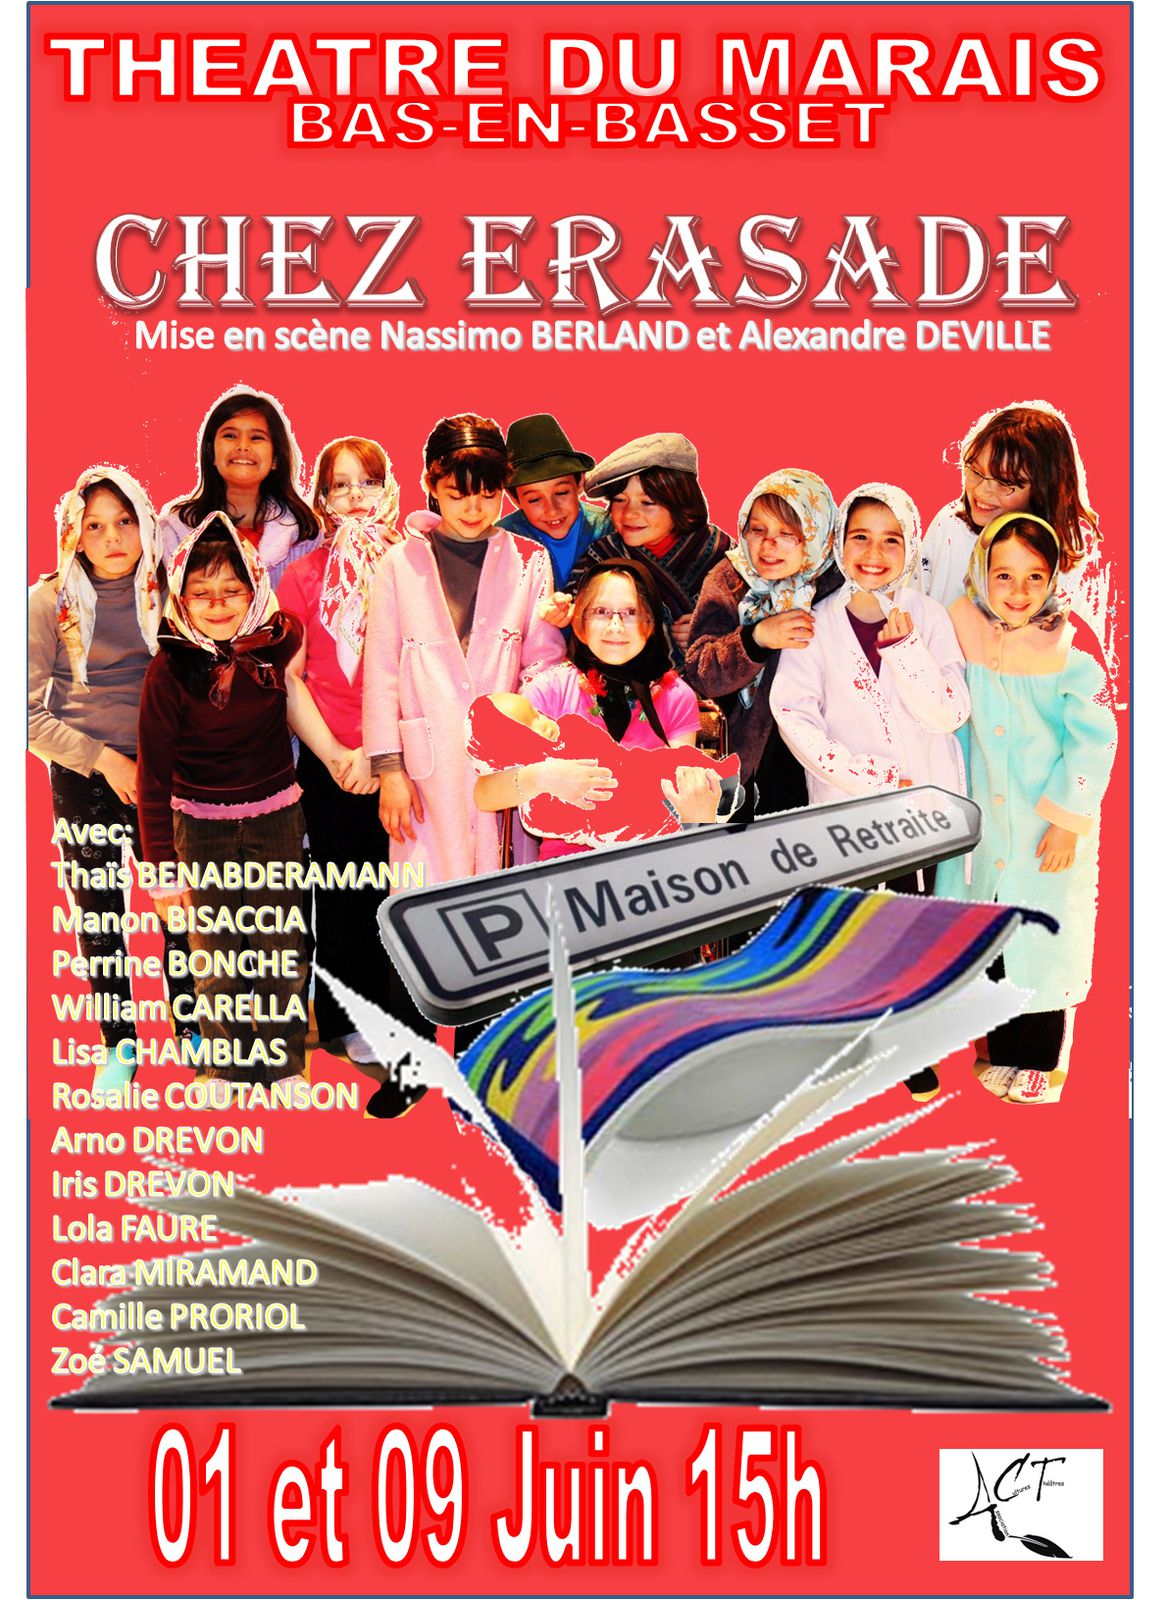 Entr'ACT 2013 - ACT - Association Culture & Théâtre de Bas-en-Basset